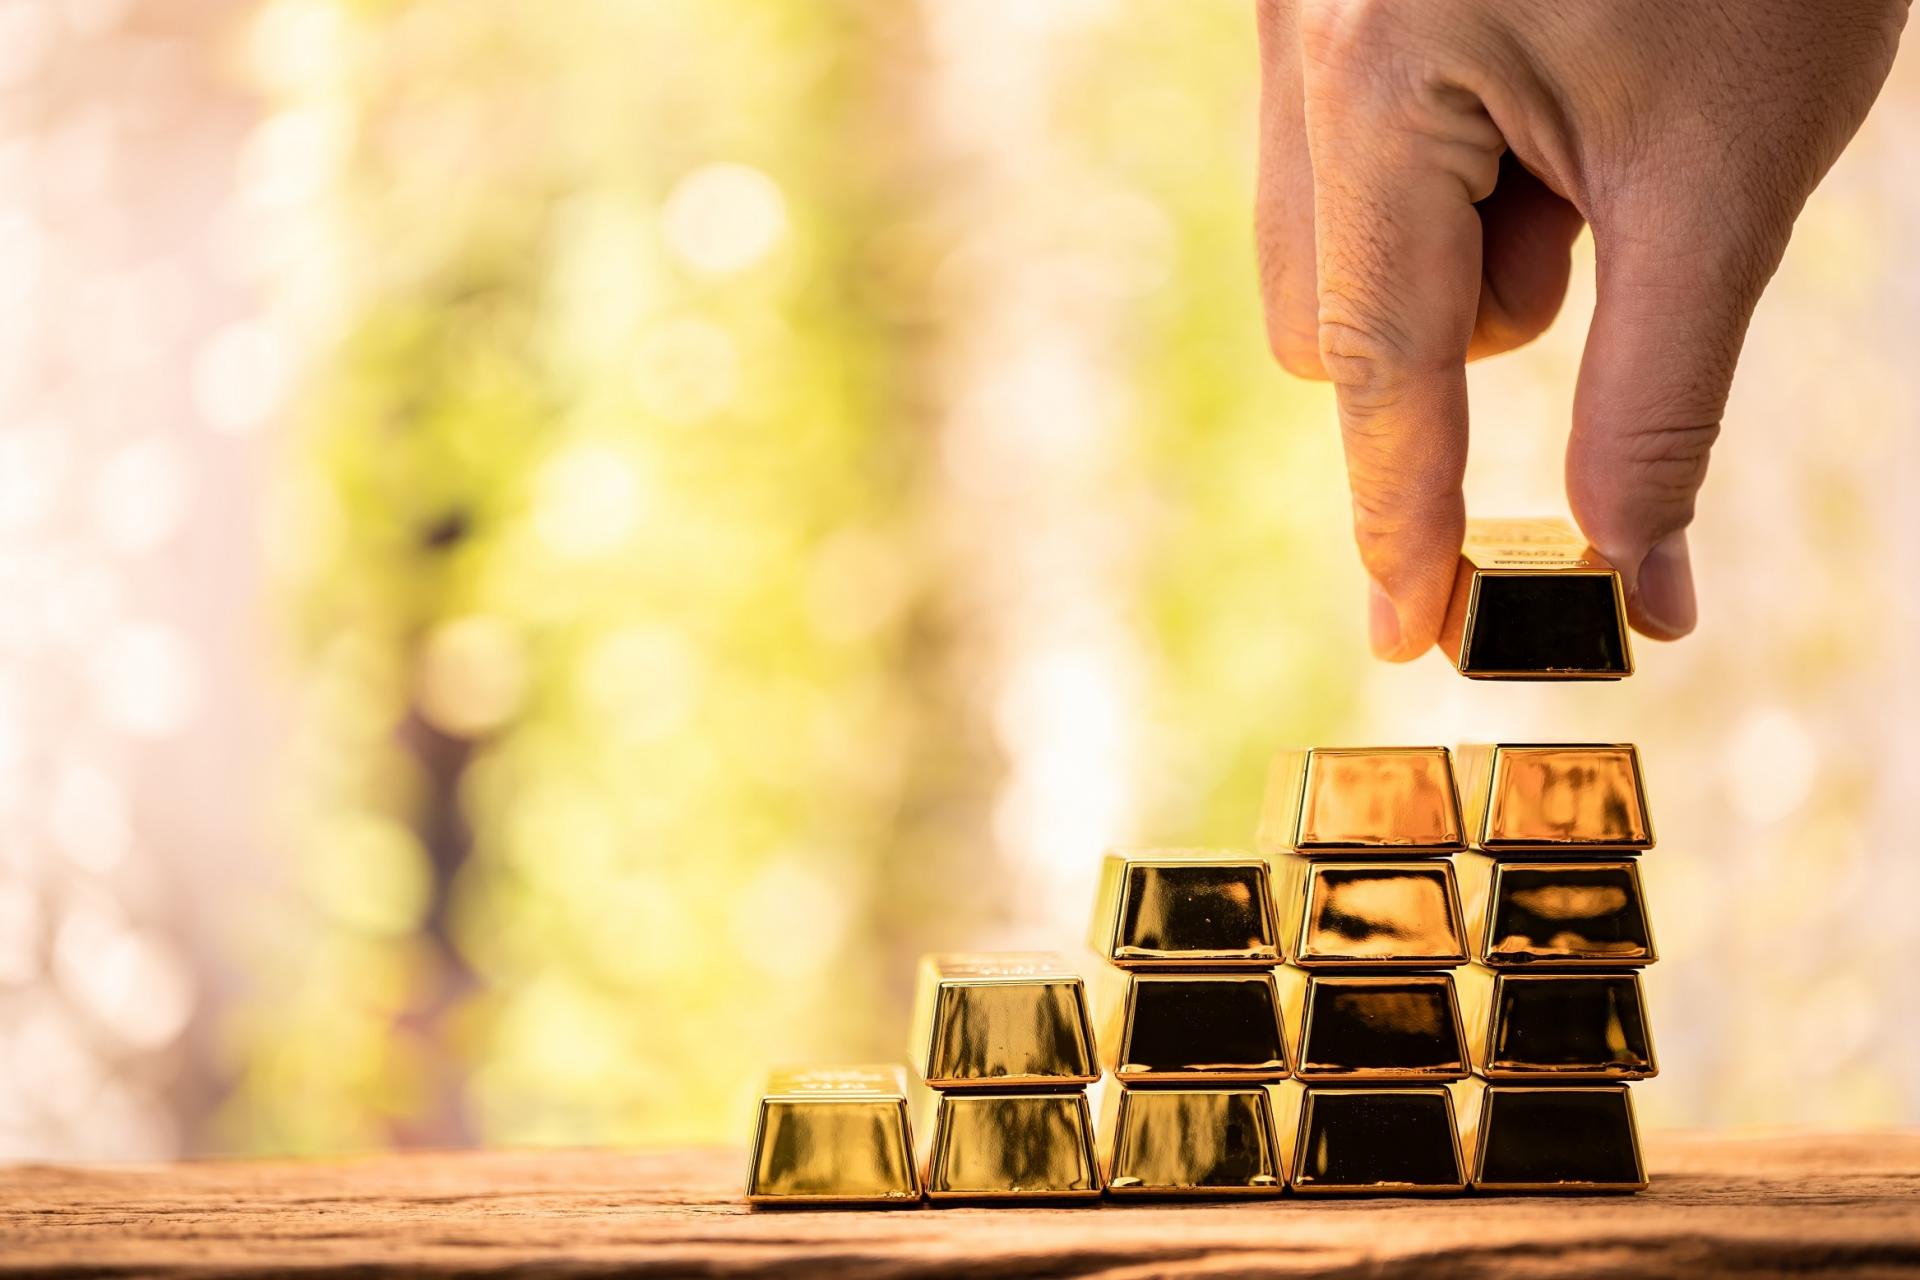 Investovať či neinvestovať do zlata? To je otázka